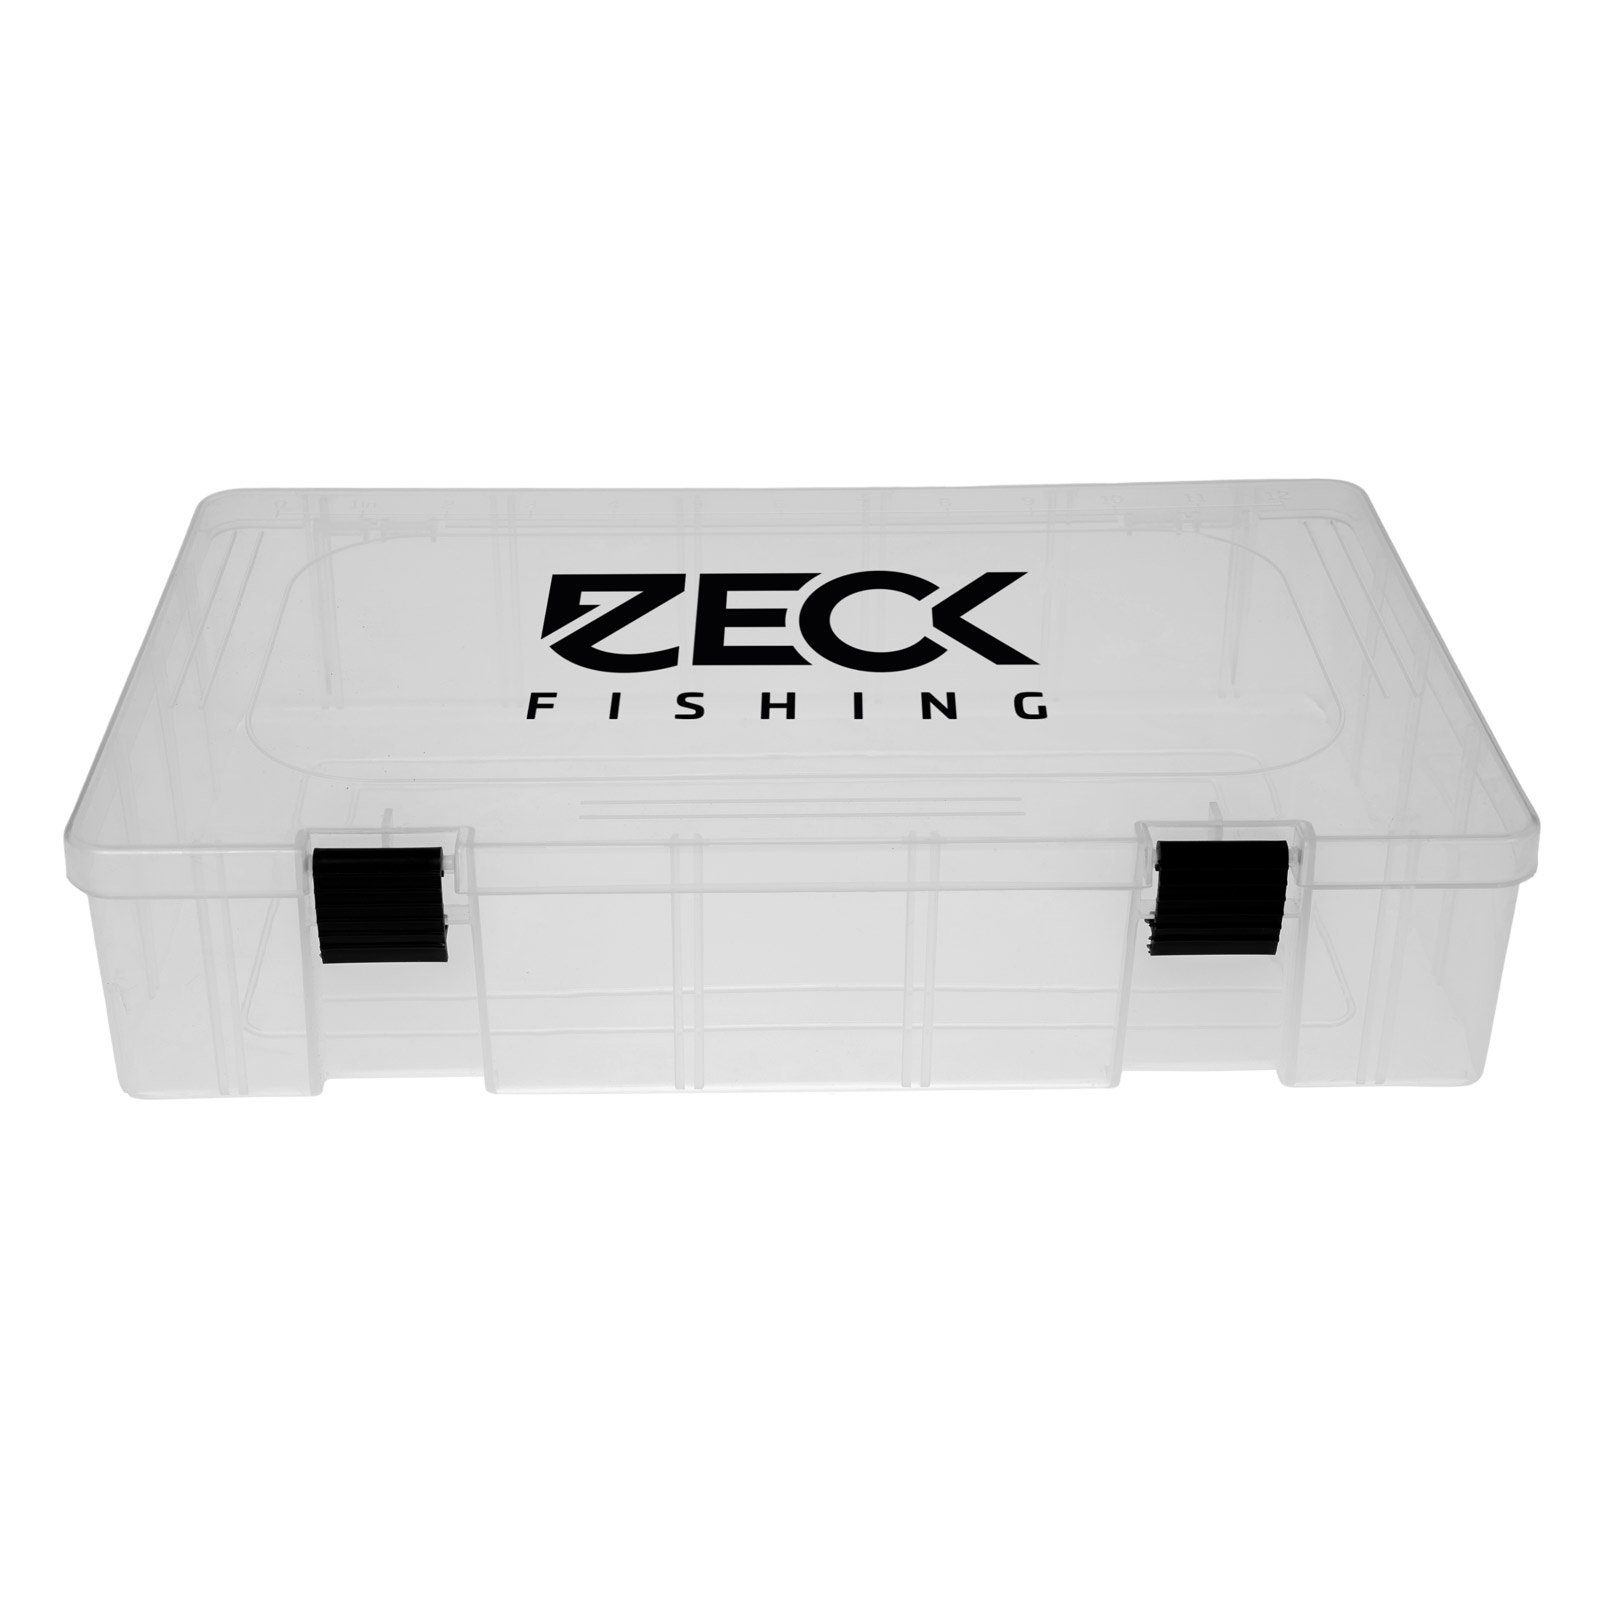 Zeck Fishing Angelkoffer, Big Bait Compartment Box Köderbox mit Einteilung